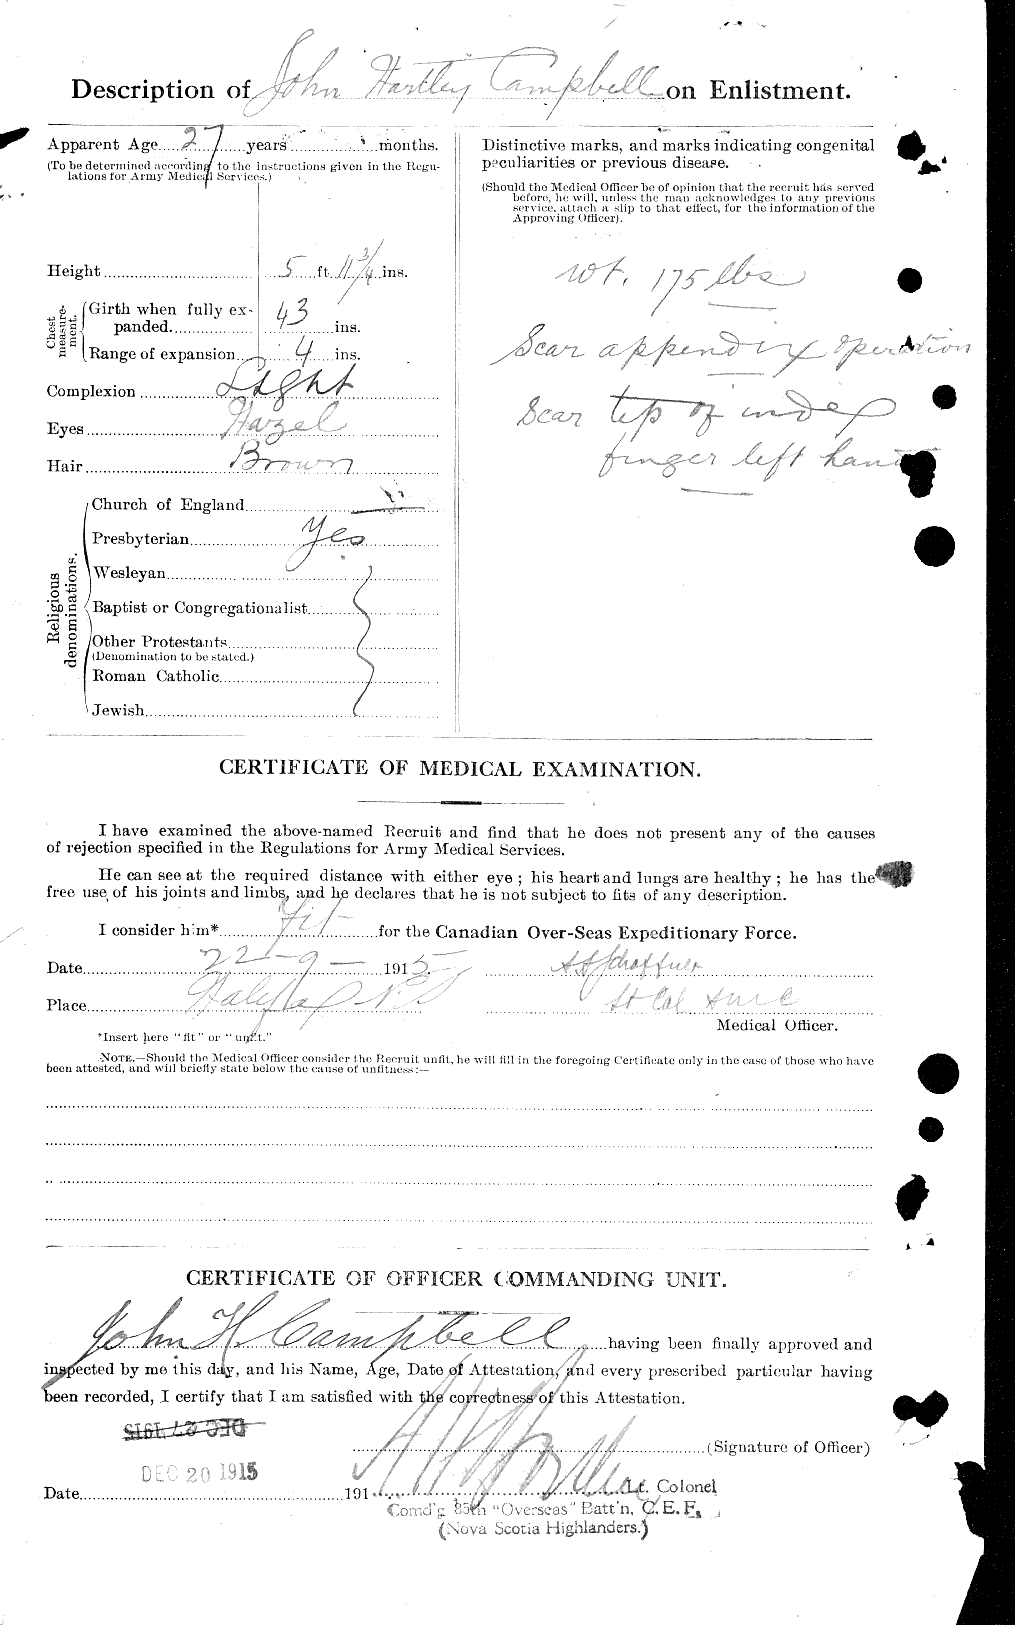 Dossiers du Personnel de la Première Guerre mondiale - CEC 008530b